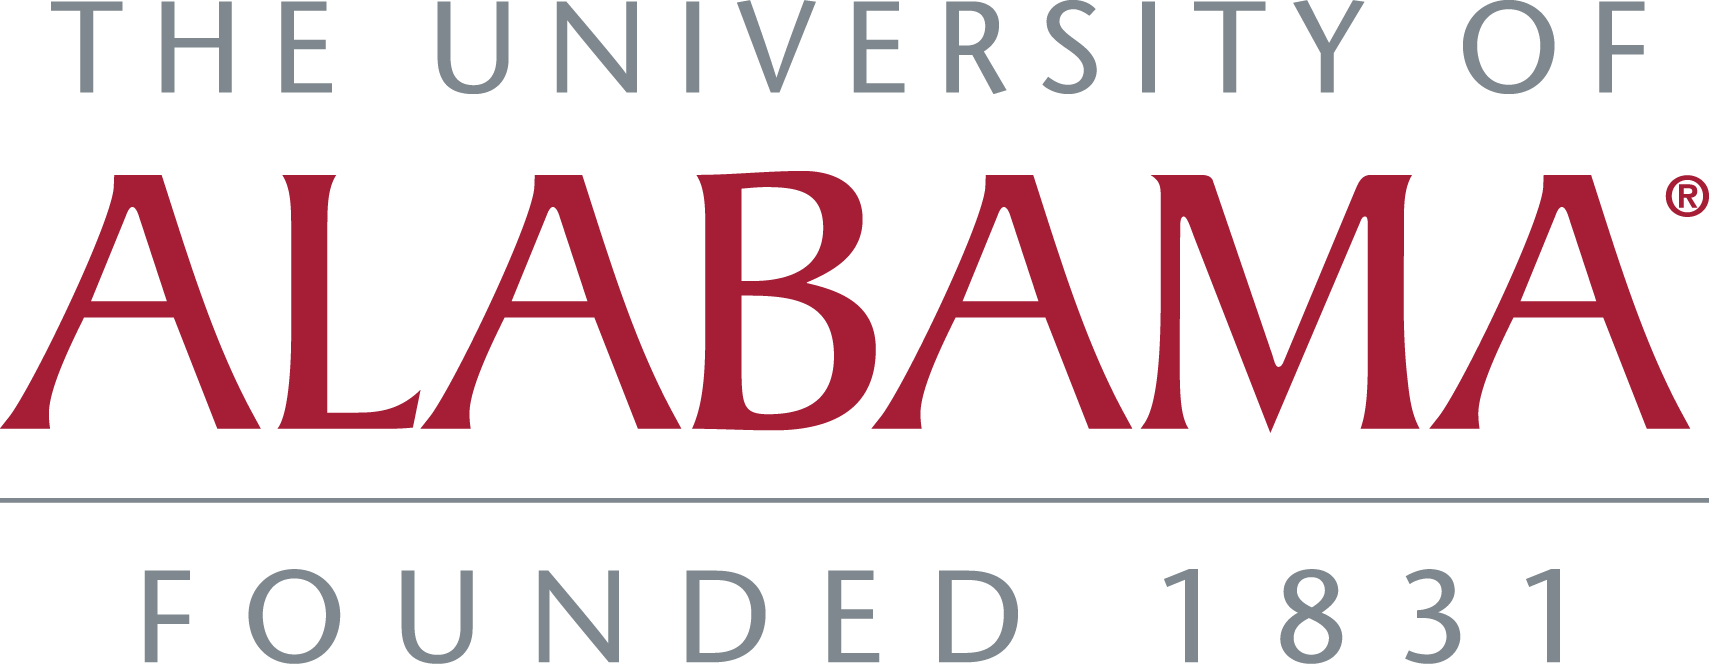 University of Alabama Logo - Logos & Wordmarks. Division of Strategic Communications